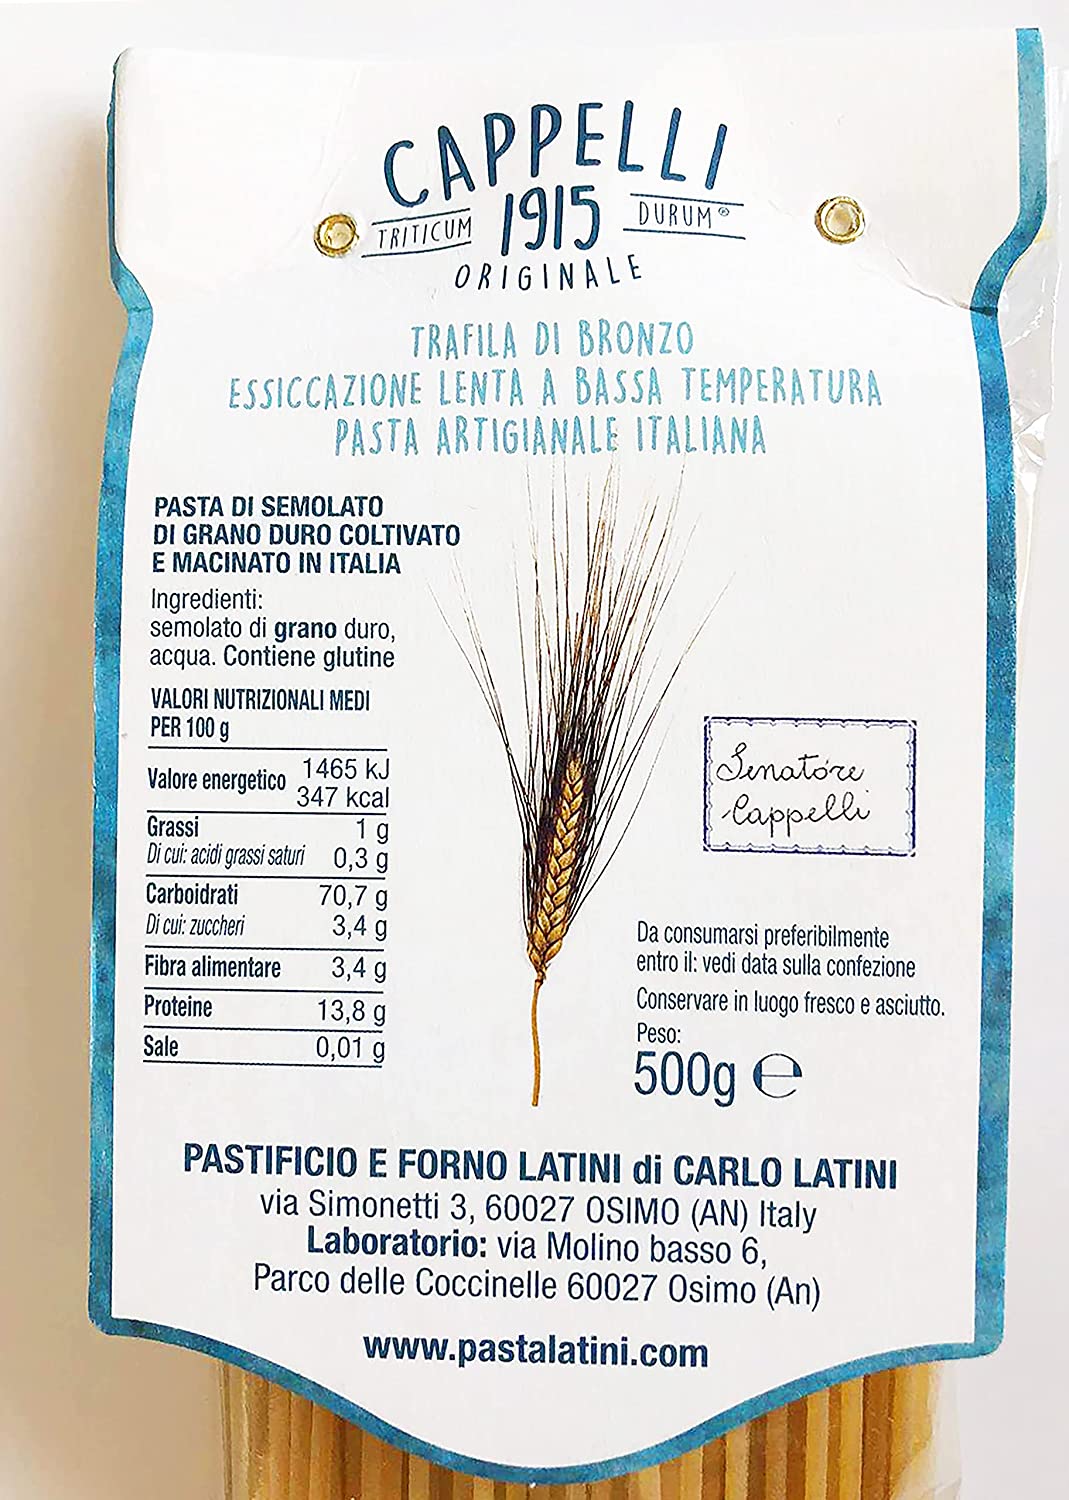 Pacco Grande pasta di grano Senatore Cappelli Originale 1915 - Carla Latini